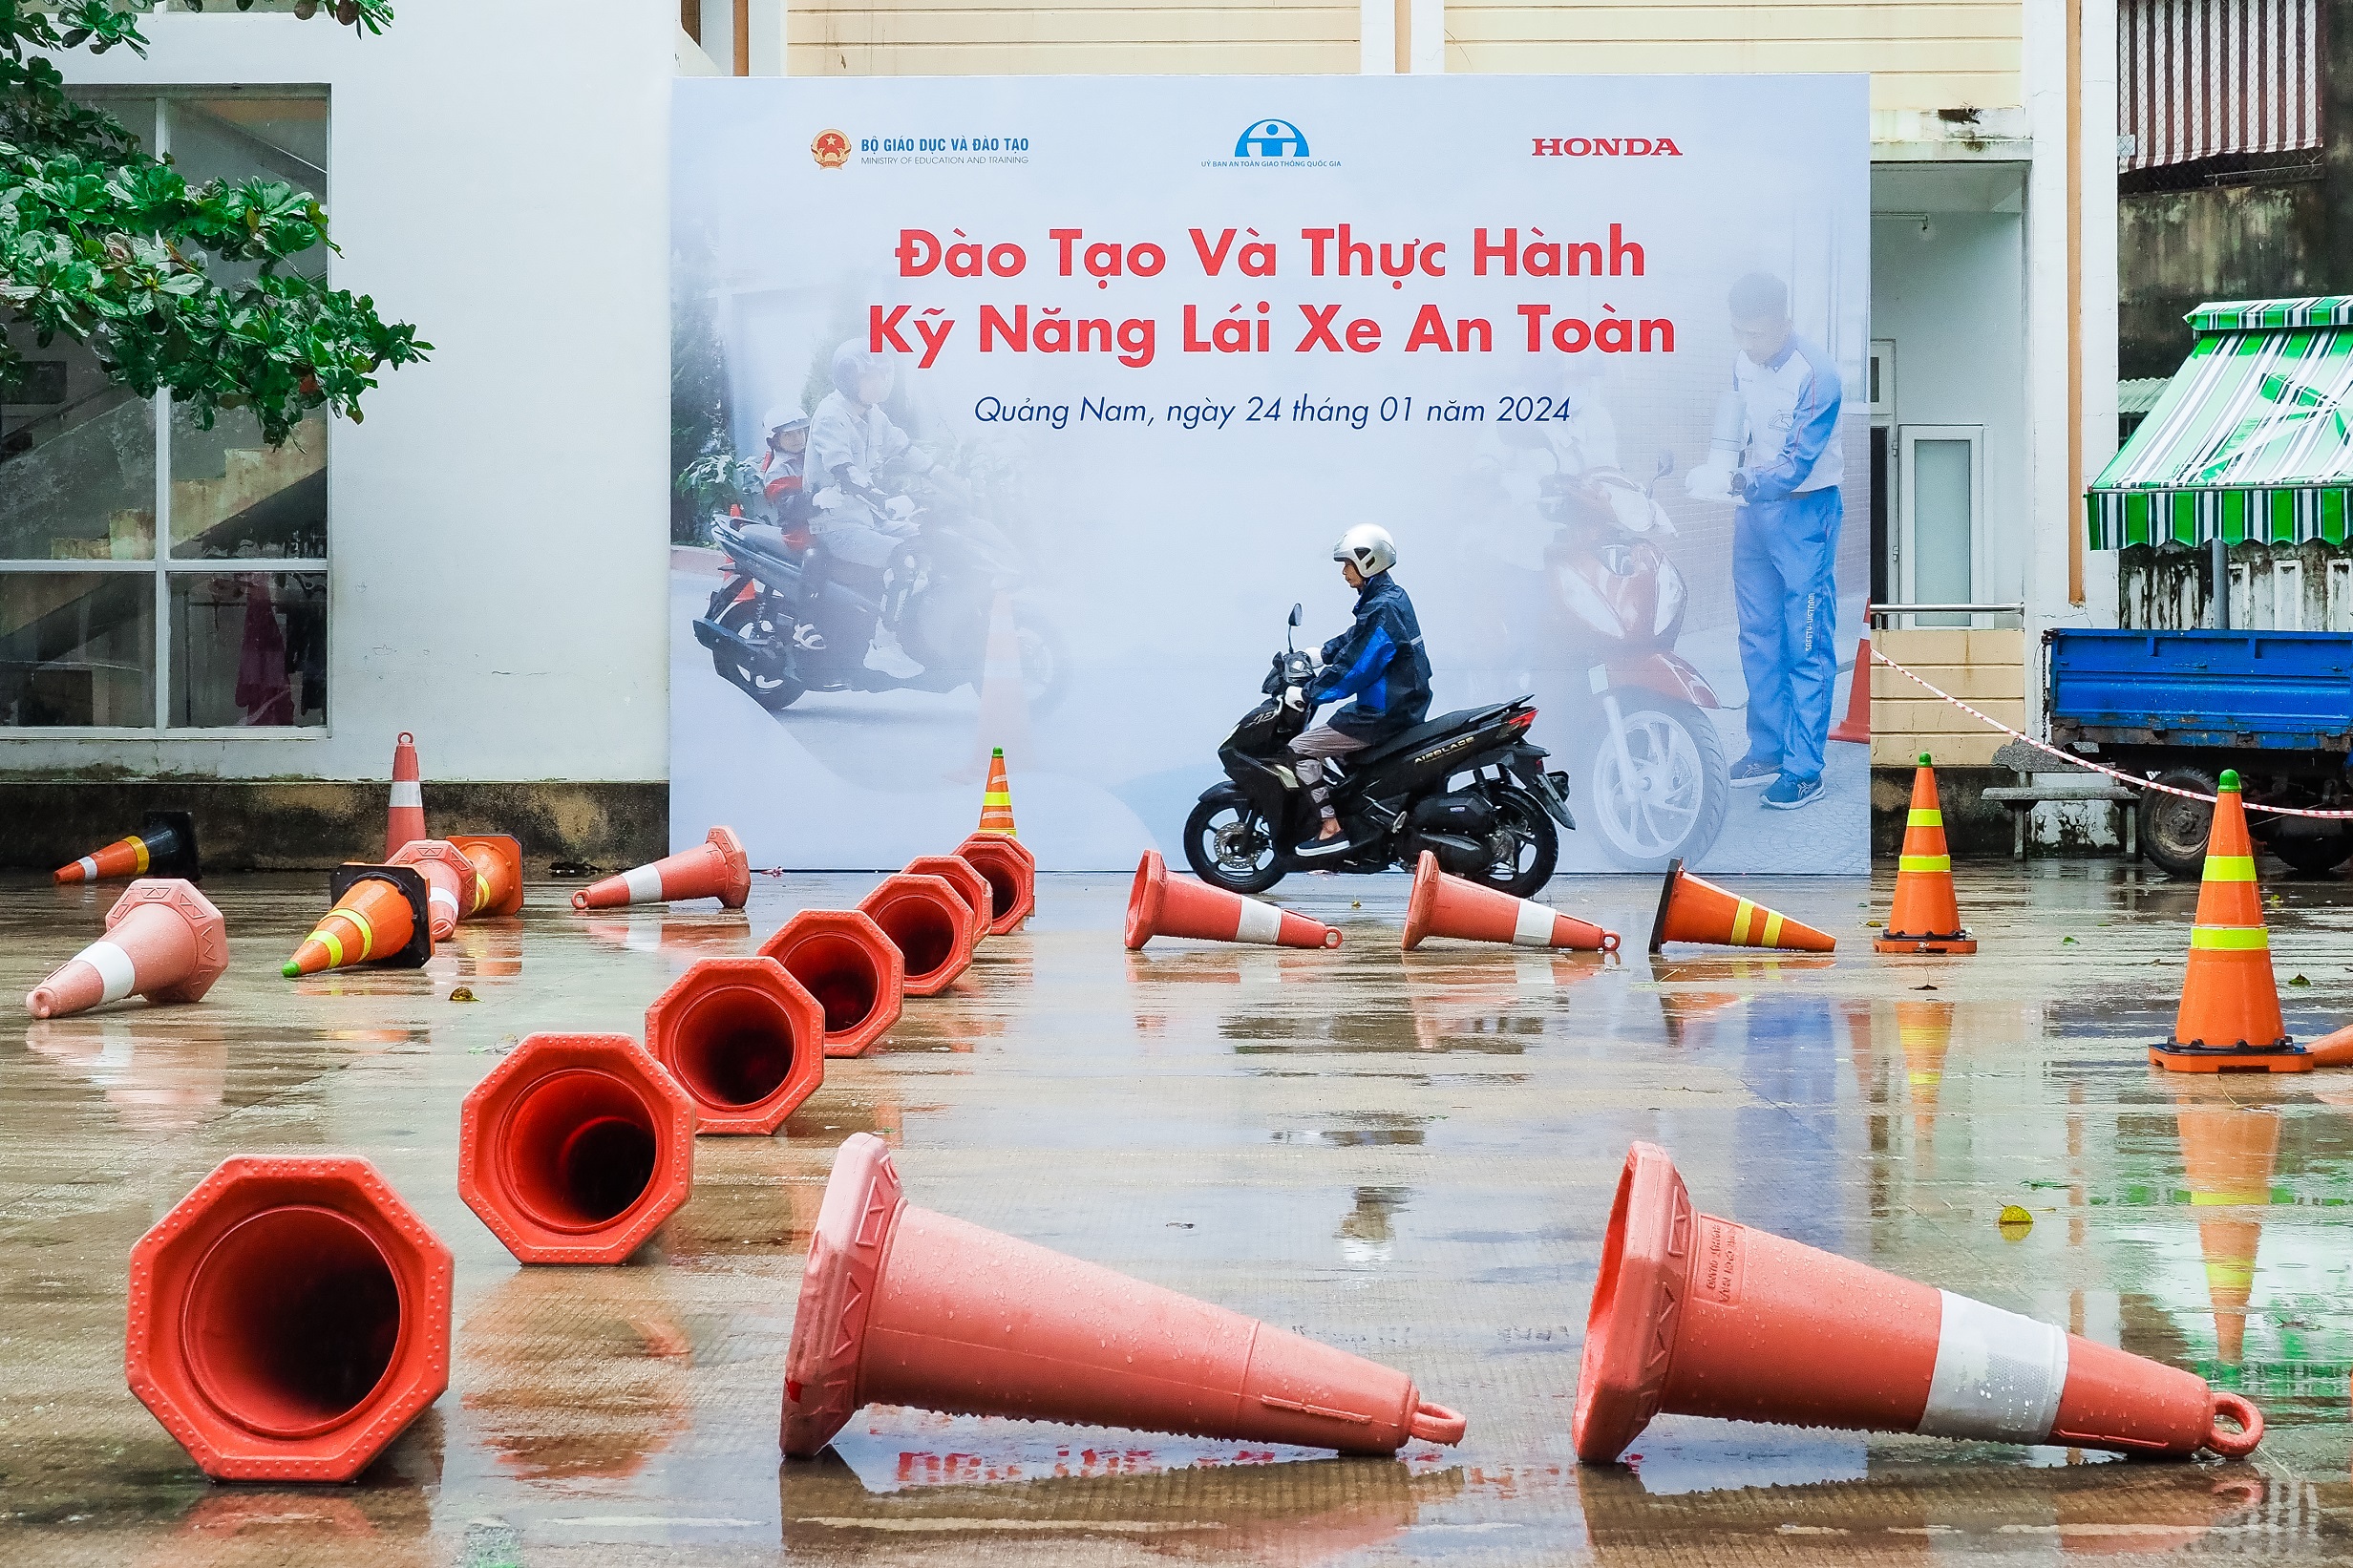 Honda Việt Nam tổng kết Trao tặng mũ bảo hiểm cho học sinh lớp Một trên toàn quốc năm học 2023 – 2024 phu-huynh-thuc-hanh-lai-xe-an-toan-tren-sa-hinh.jpg